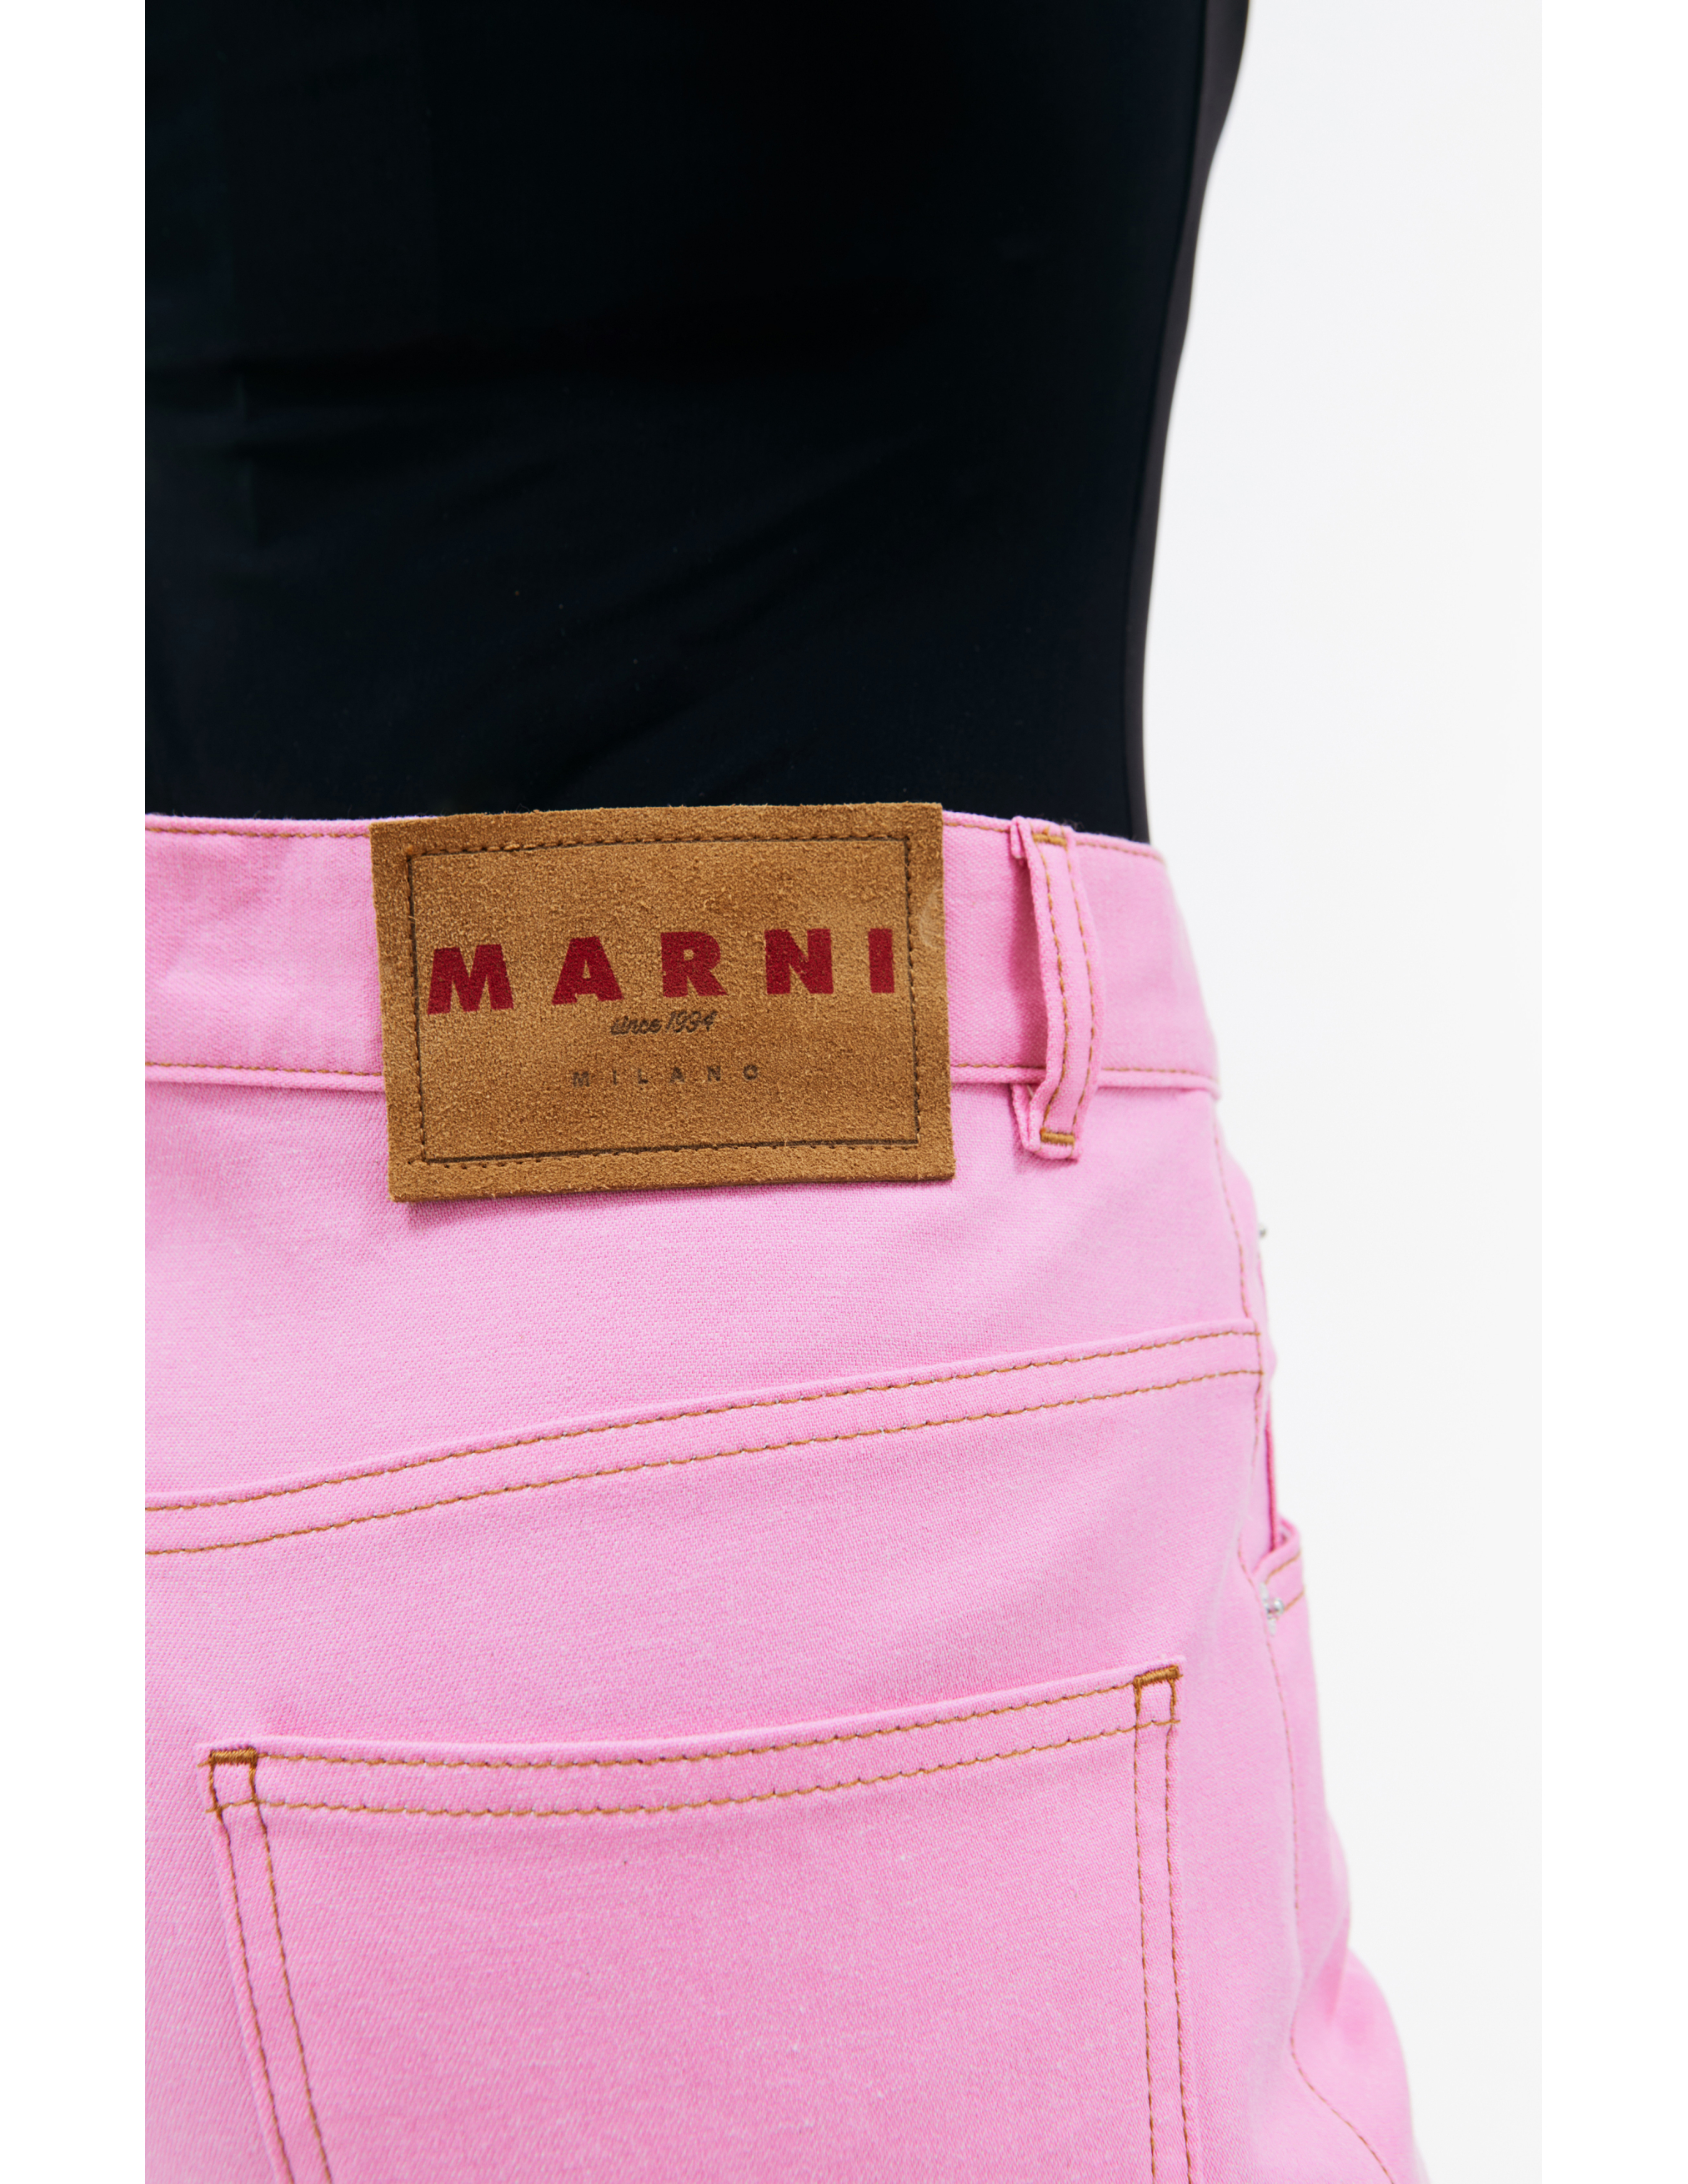 Расклешенные джинсы с вышитым логотипом Marni PAJD0492S0/UTC341/00C14, размер 36;38;40 PAJD0492S0/UTC341/00C14 - фото 4